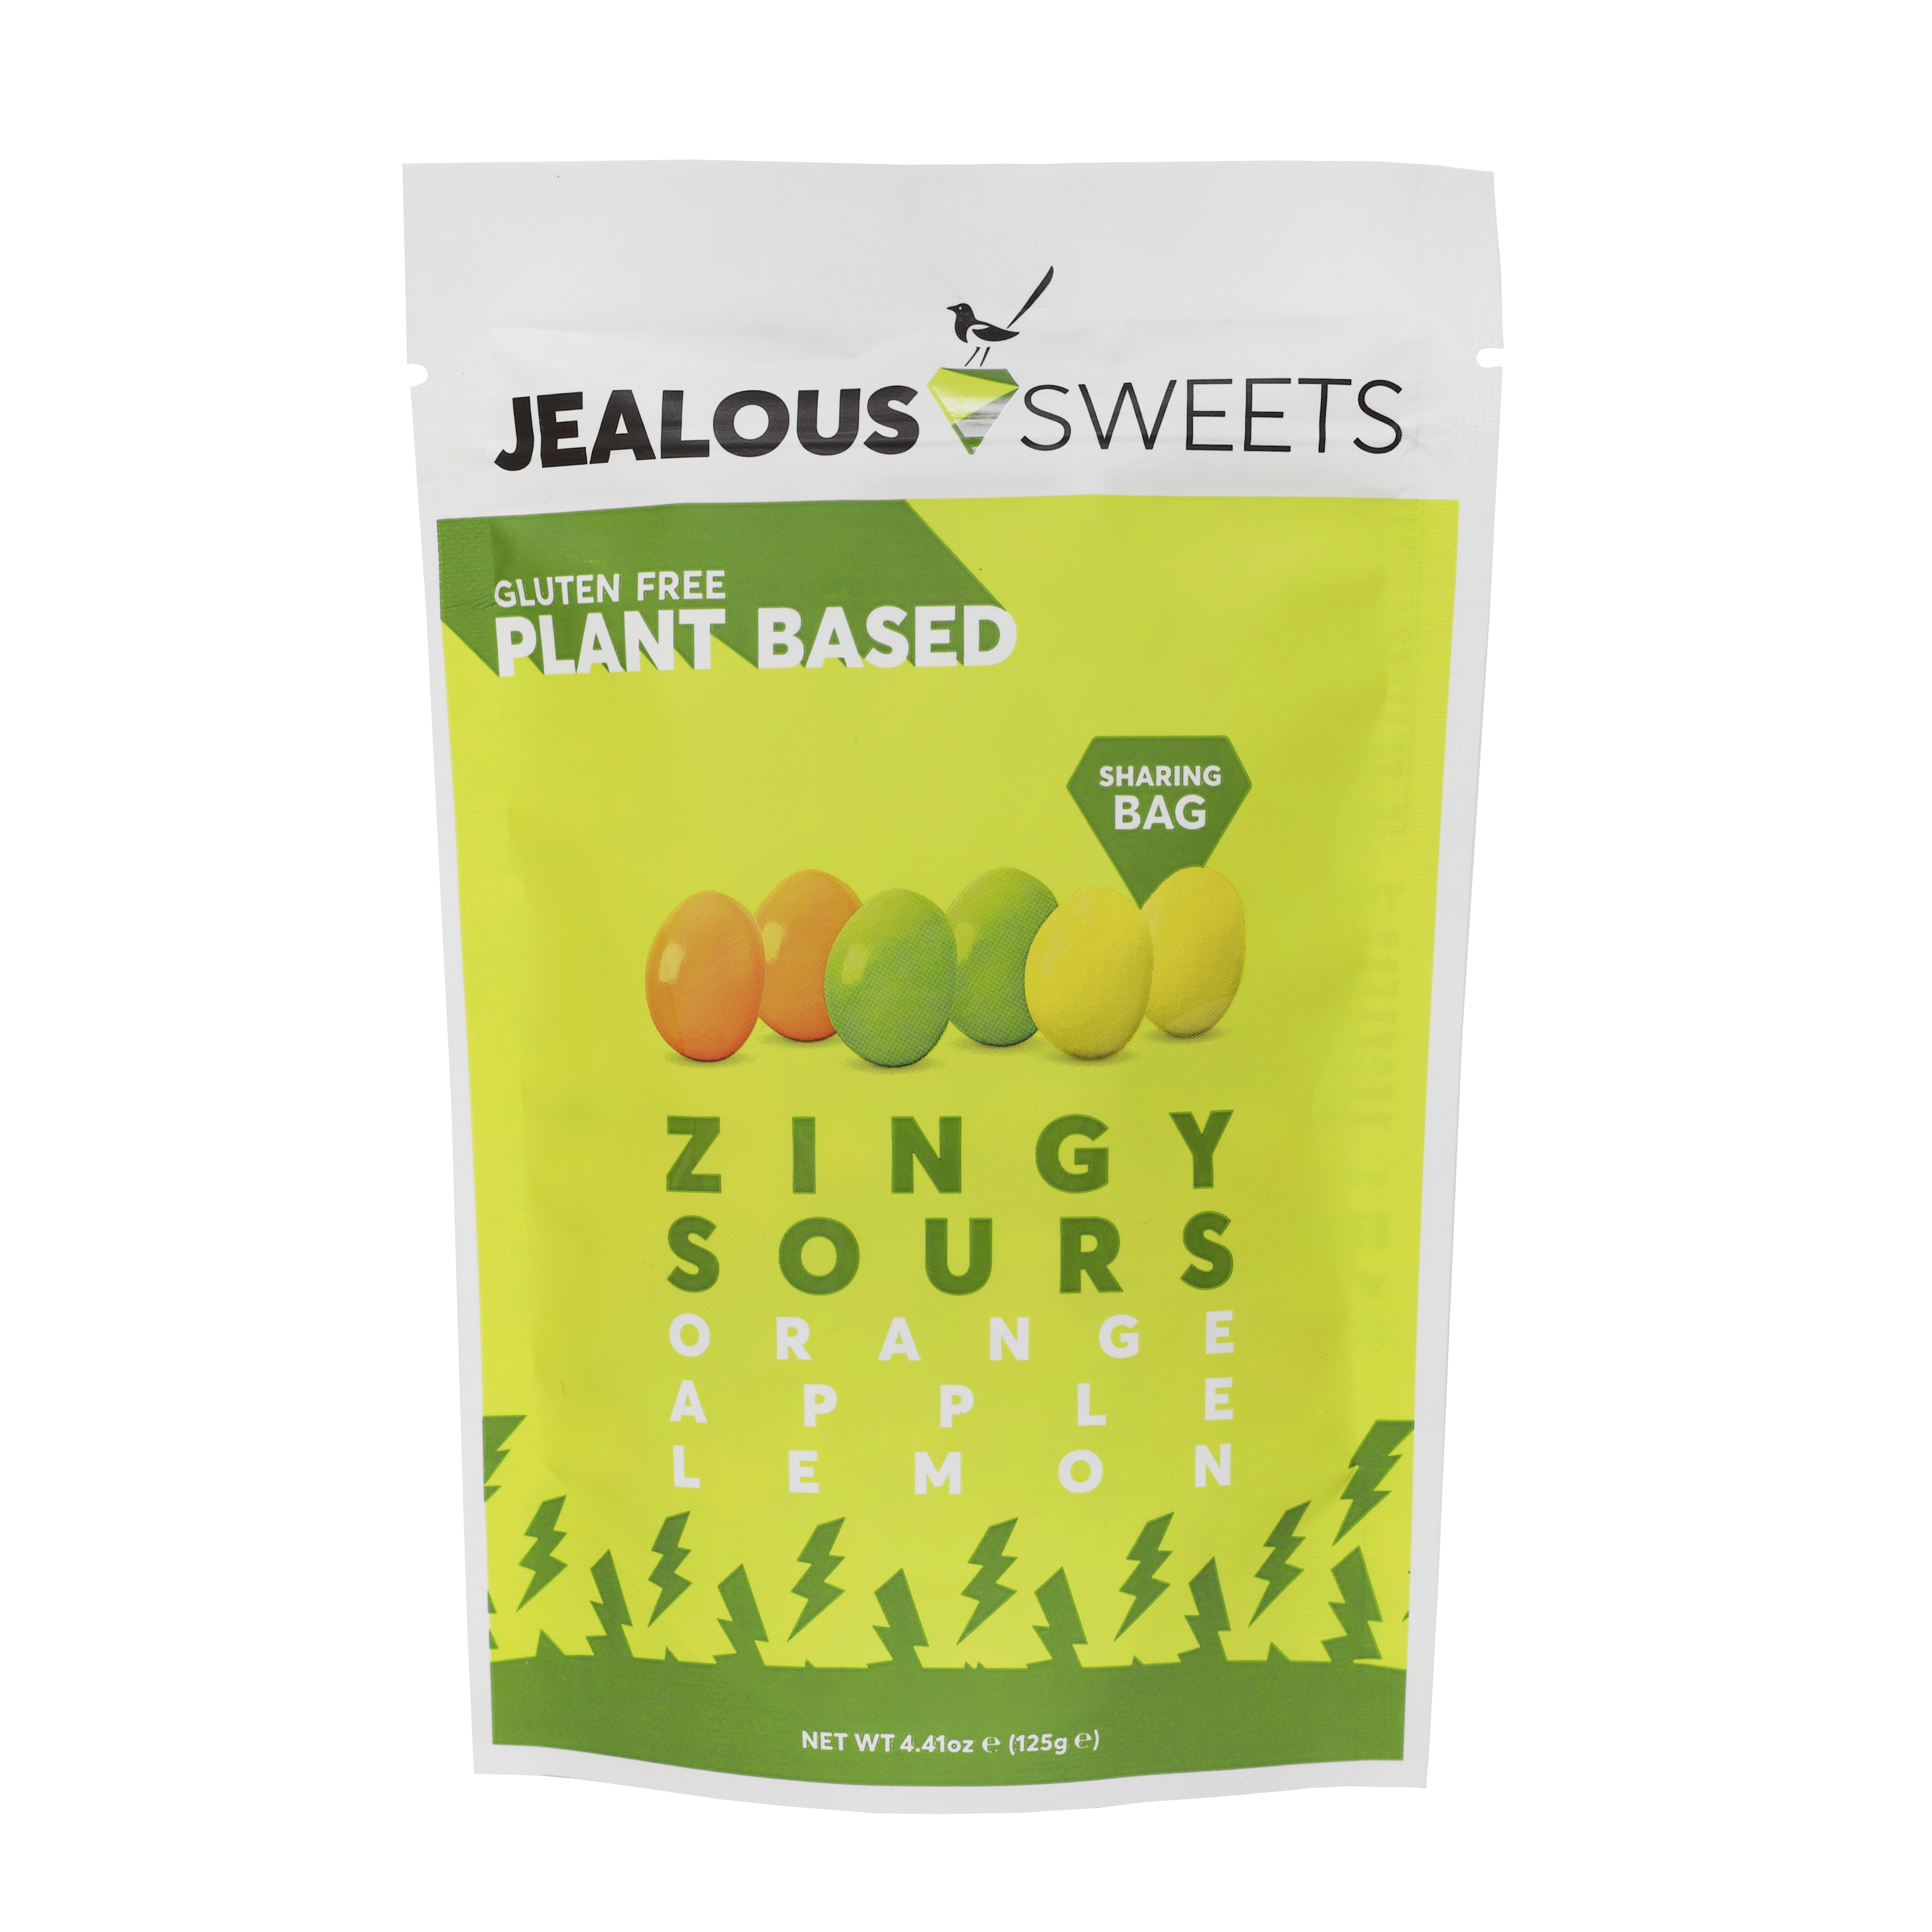 Jealous Sweets Zingy Sours 7 units per case 4.5 oz